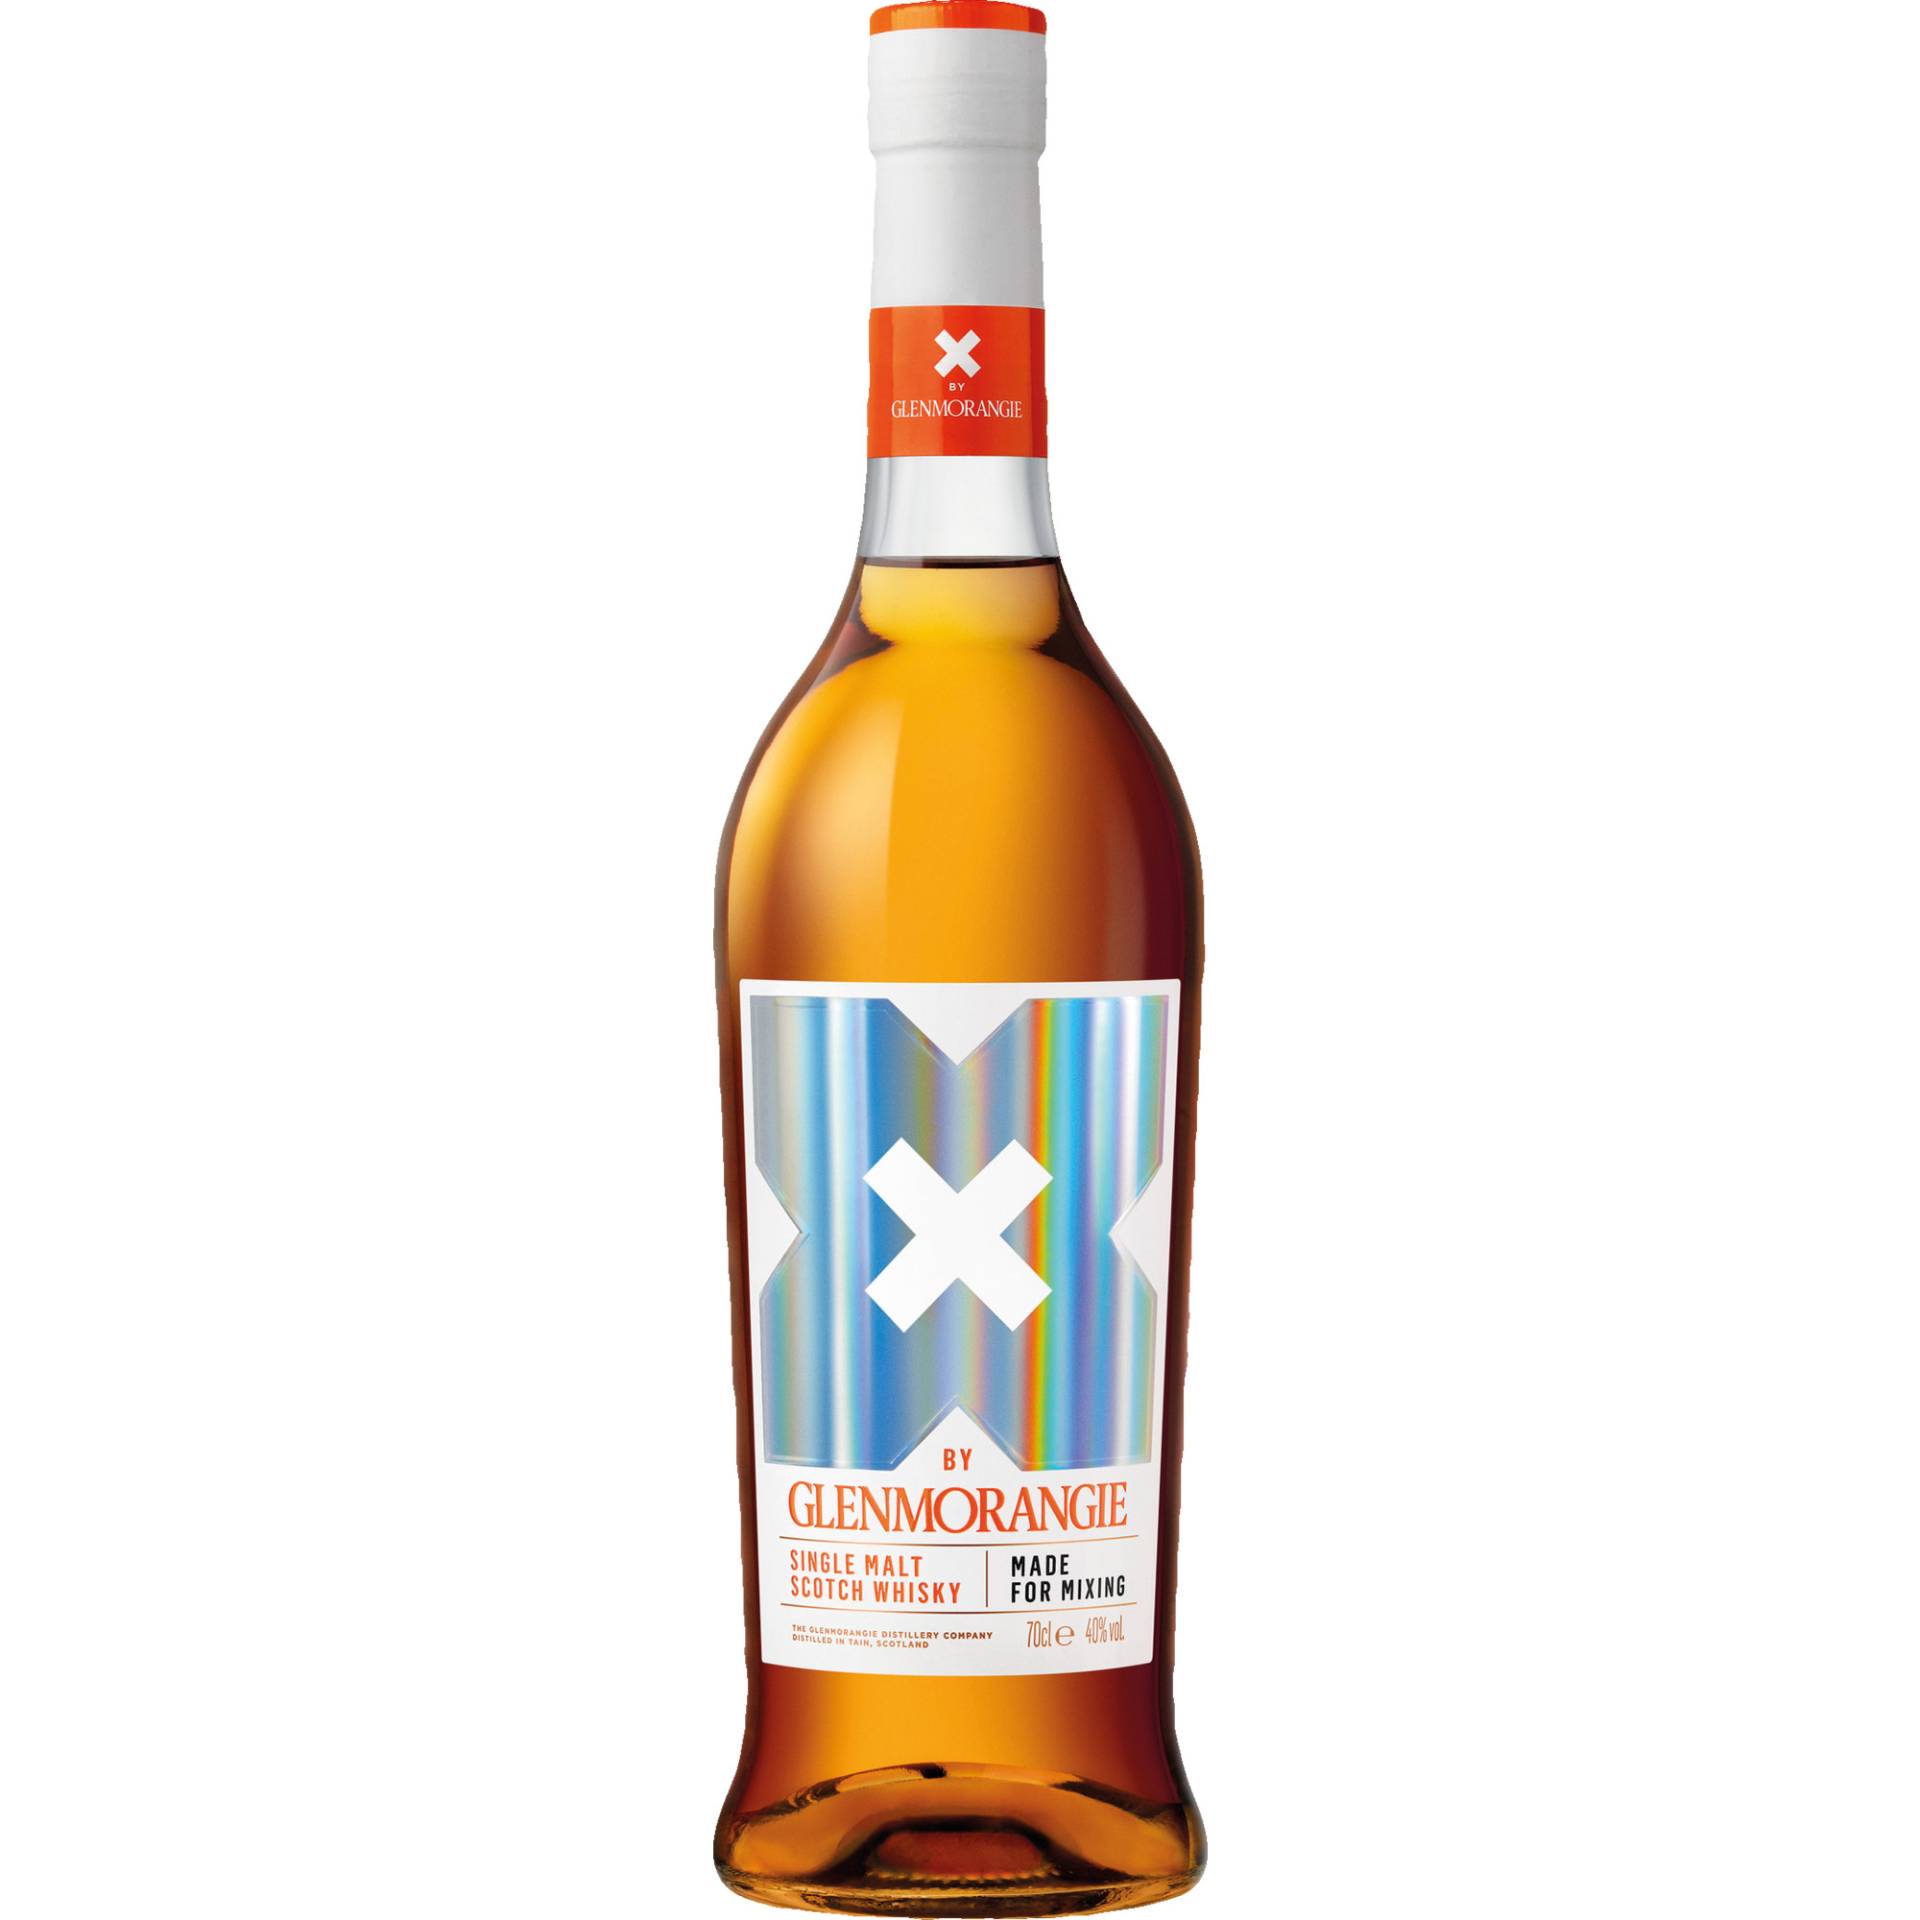 Glenmorangie X, Highland Single Malt Scotch Whisky, 0,7 L, 40% Vol, Schottland, Spirituosen von Moët Hennessy Deutschland GmbH , Seidlstrasse 23, 80335 München, Deutschland